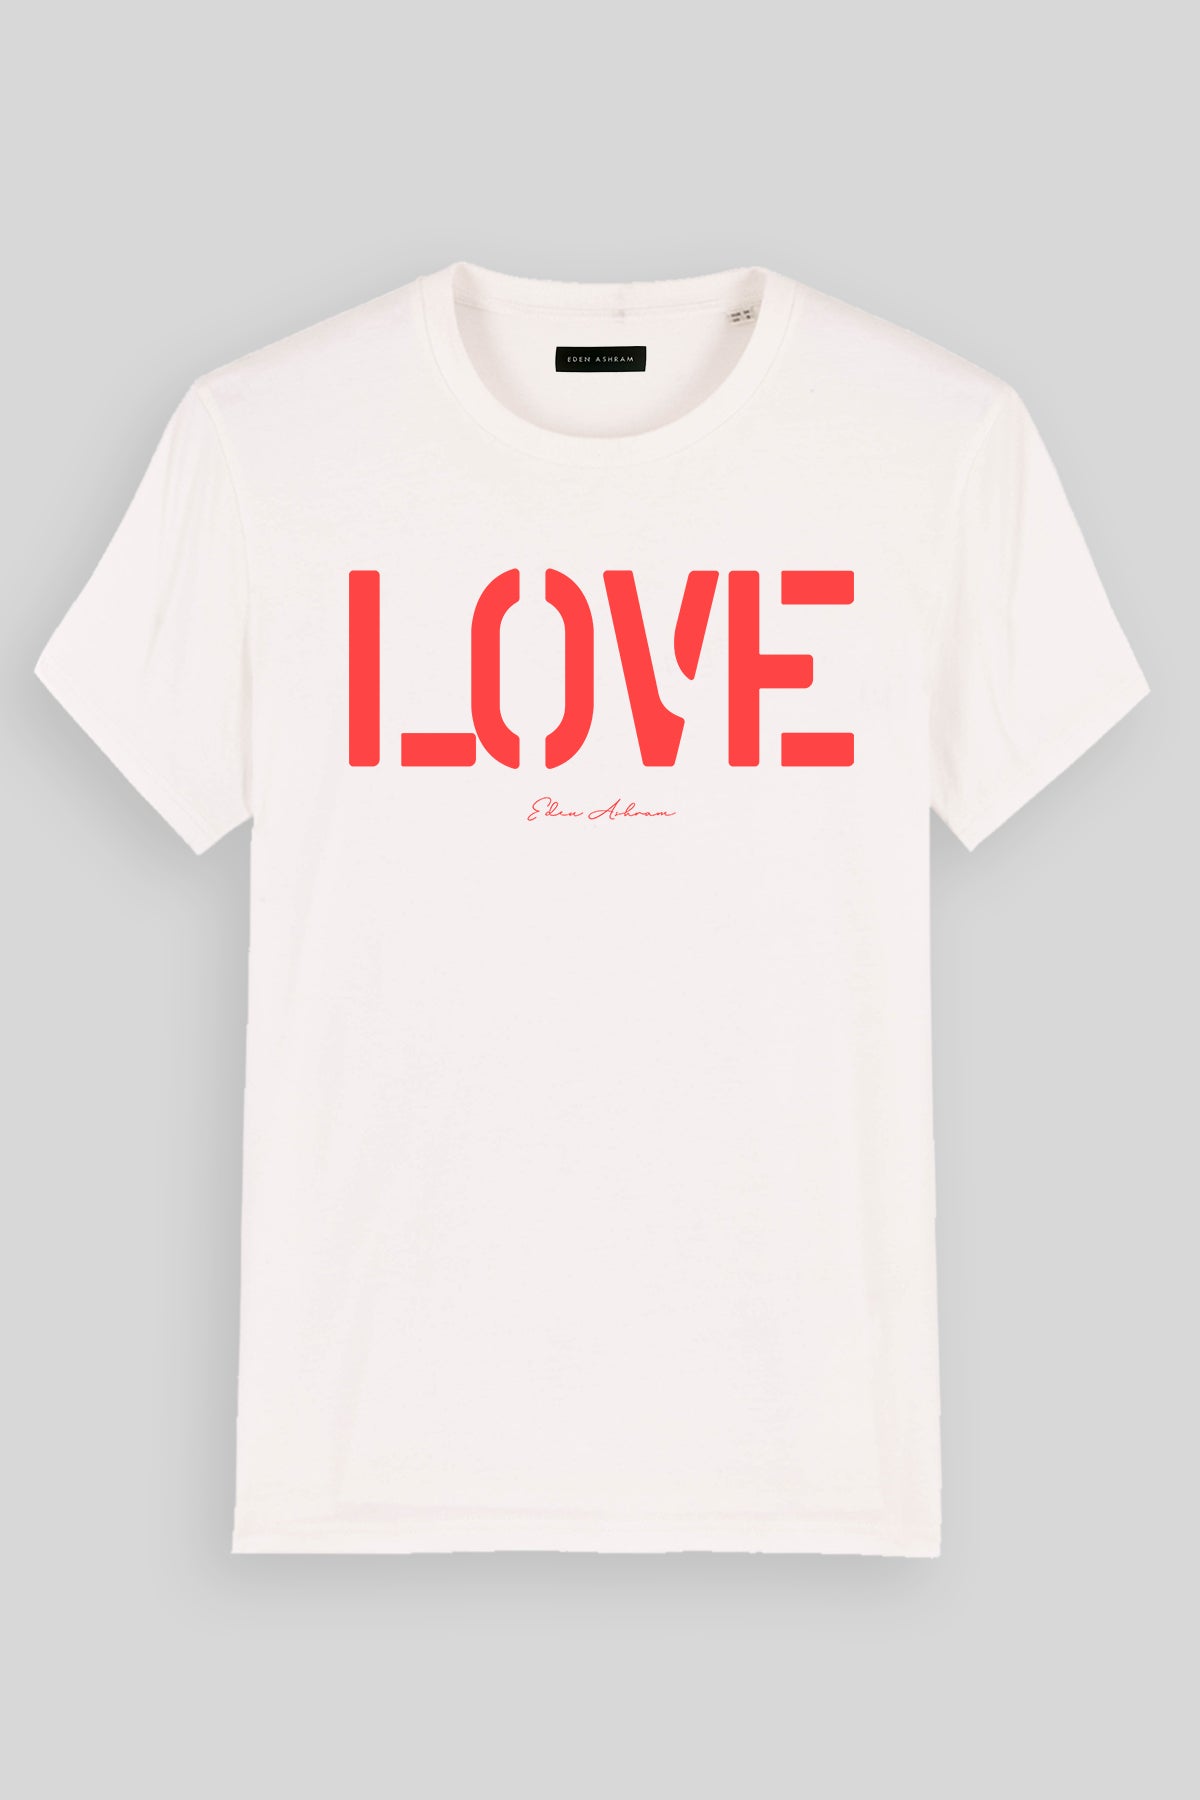 EDEN ASHRAM LOVE Premium Classic T-Shirt Vintage White